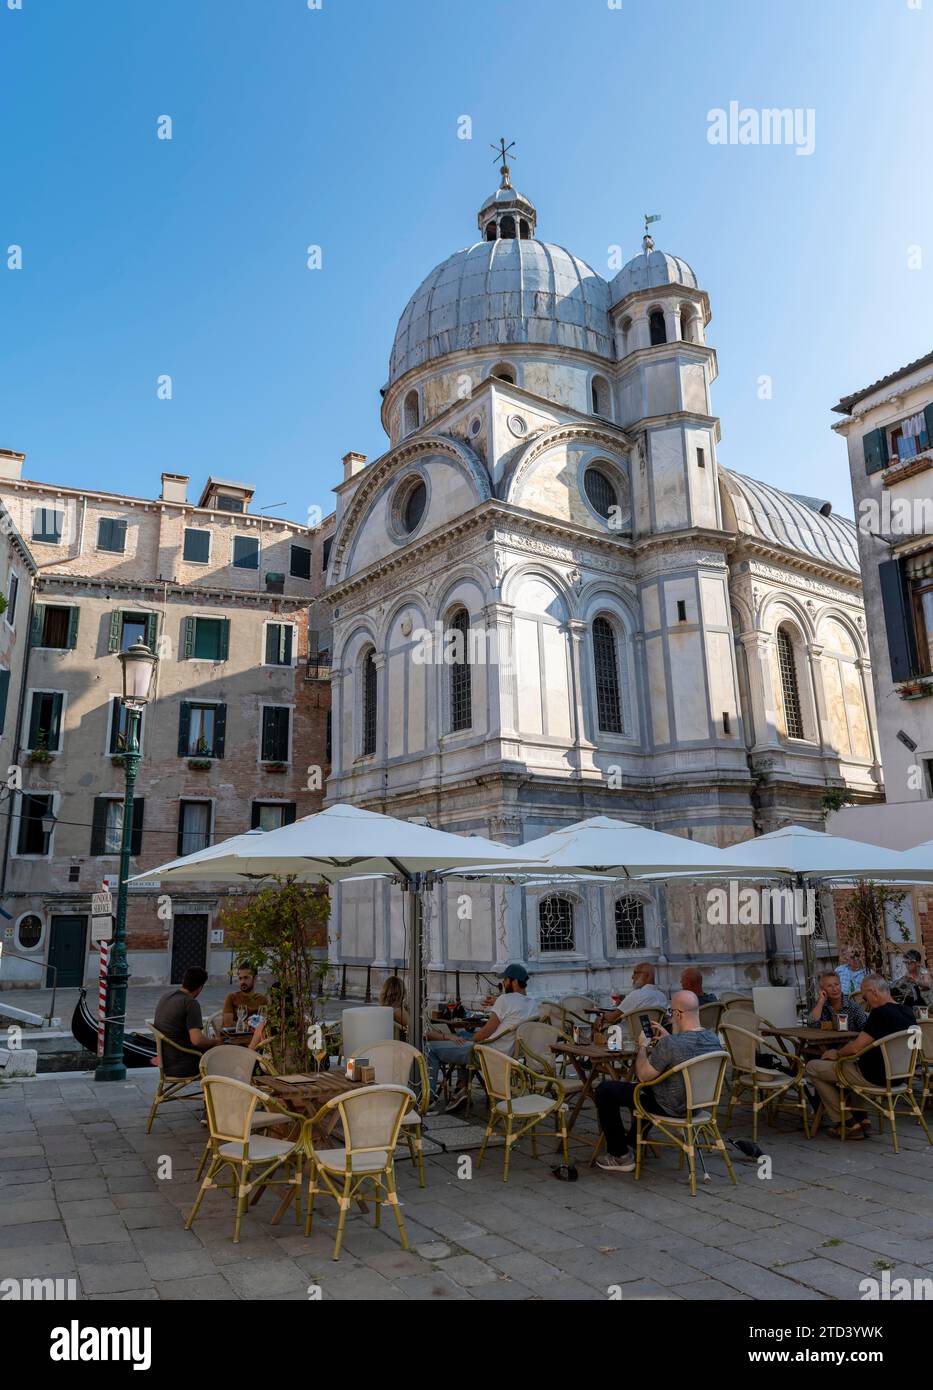 Restaurant and Church of Santa Maria dei Miracoli, Santa Maria dei Miracoli, Venice, Italy Stock Photo